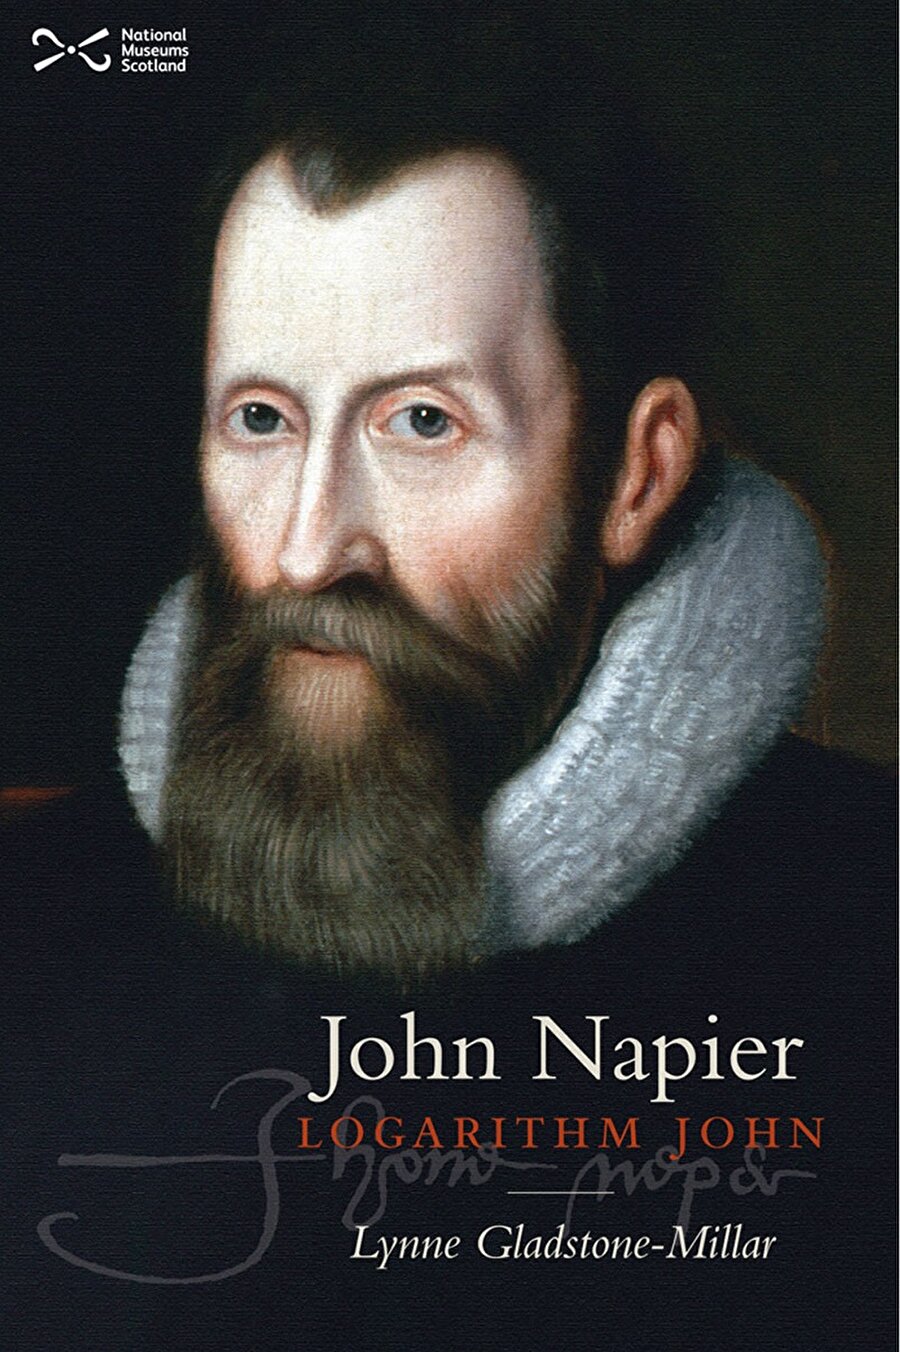 Matematik alanında öncü olmuştur.
Matematik alanındaki çalışmaları sonucunda uzunluk ölçülerini gösteren cetveller hazırlamıştır. Napier gibi birçok bilim adamına matematik konusunda öncü olmuş ve kitapları yüzyıllarca okullarda okutulmuştur.